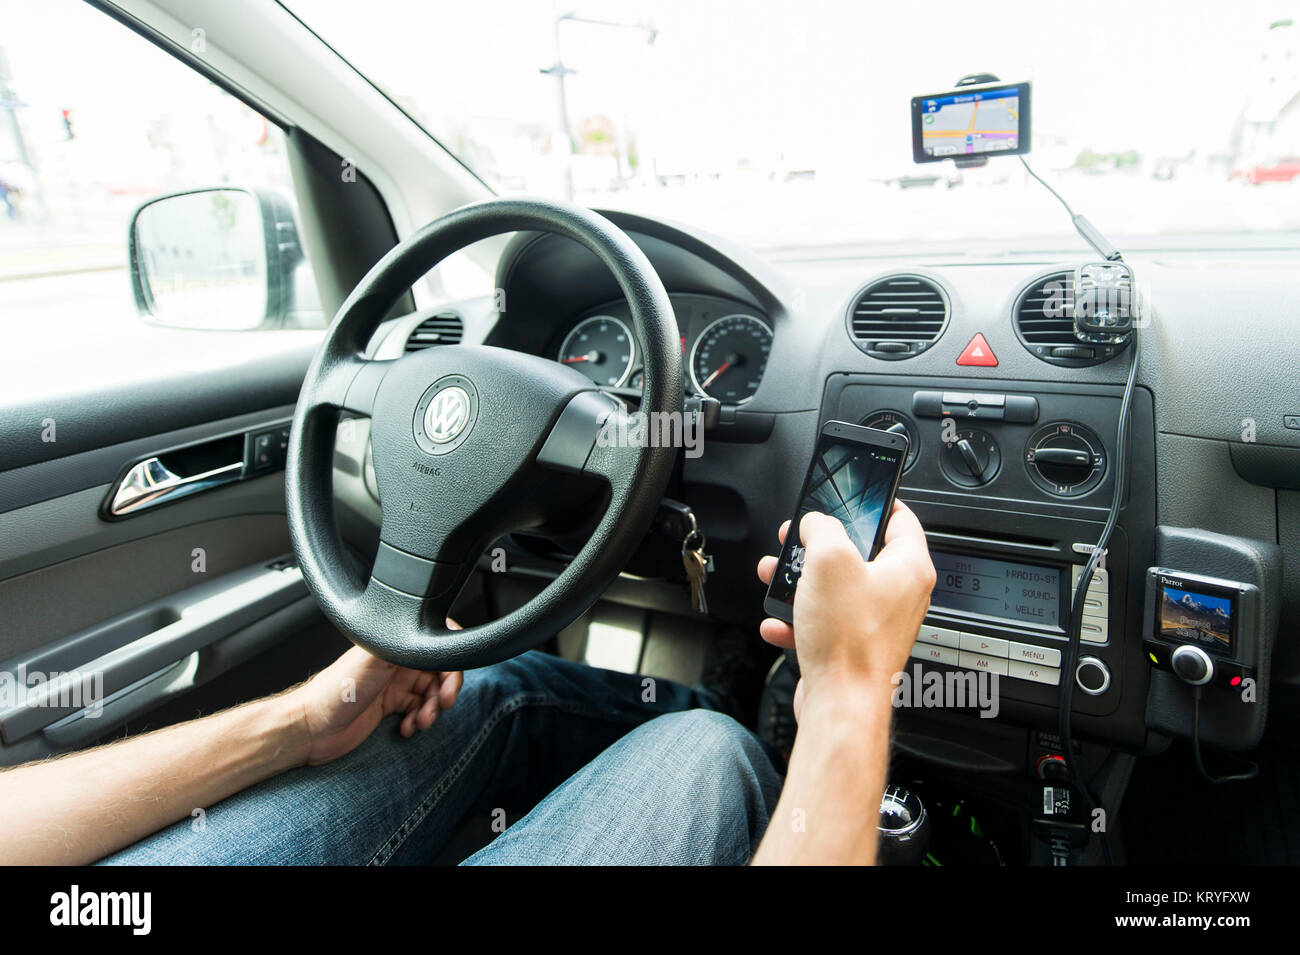 Autofahrer bedient comodo während der Fahrt - utilizzo del cellulare mentre si è alla guida di un veicolo Foto Stock